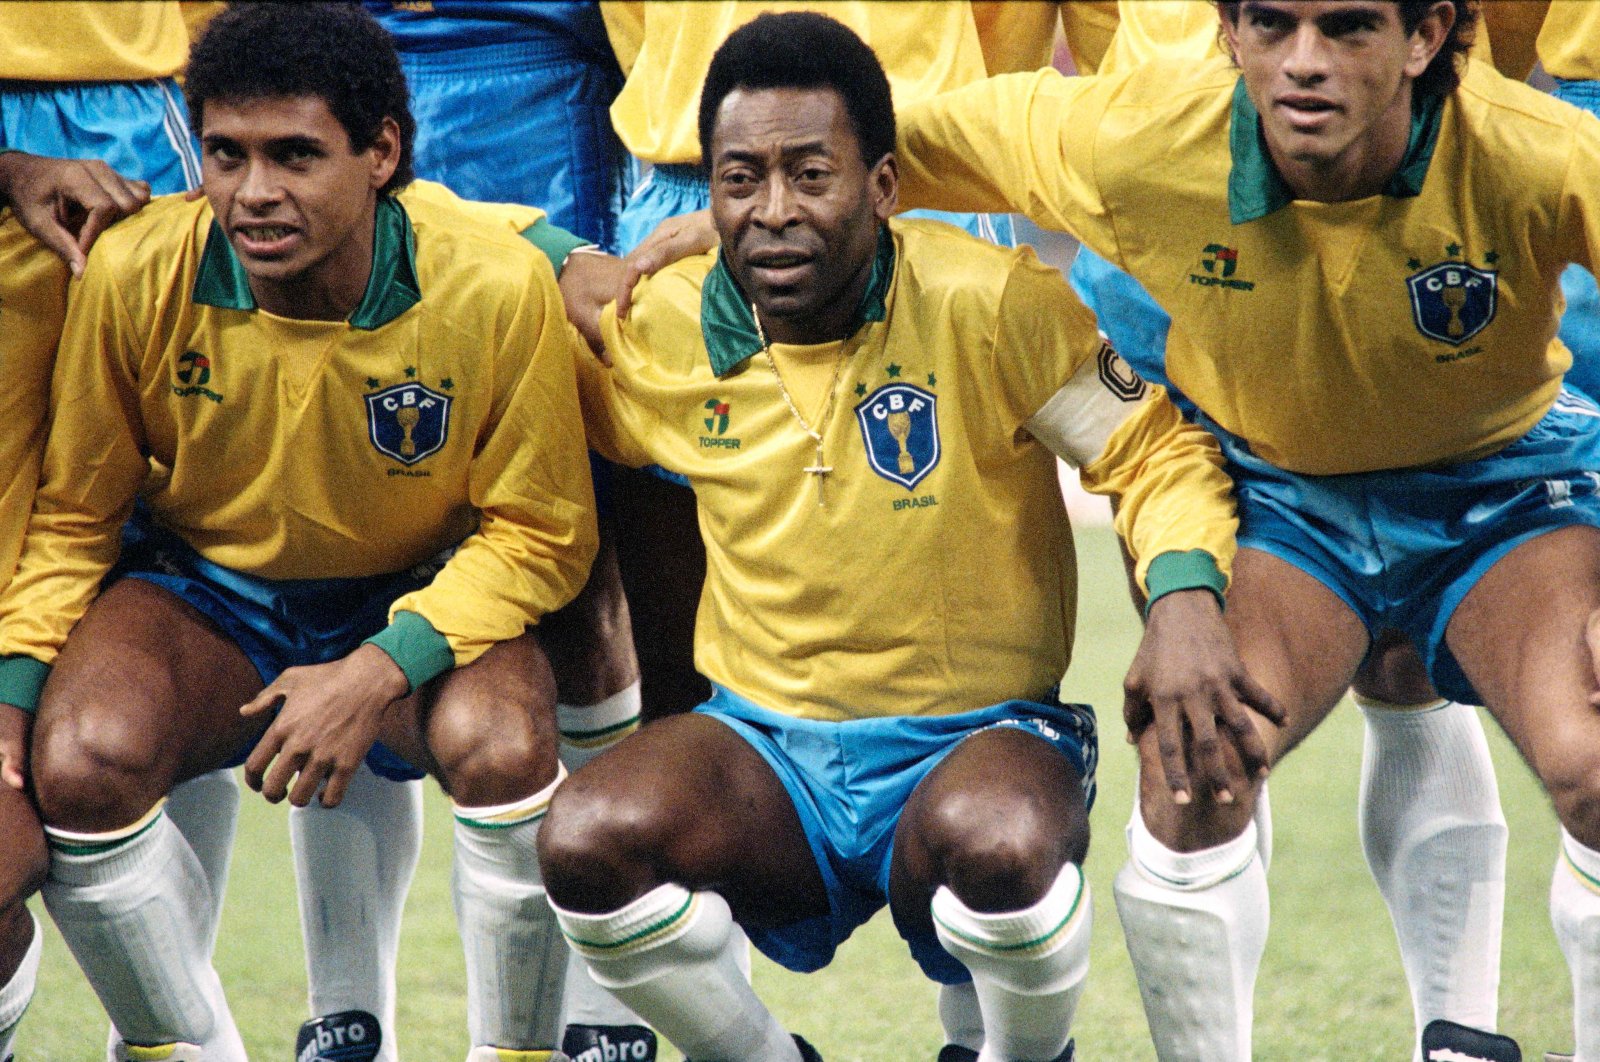 Pele, raja sepak bola Brasil yang perkasa, meninggal pada usia 82 tahun